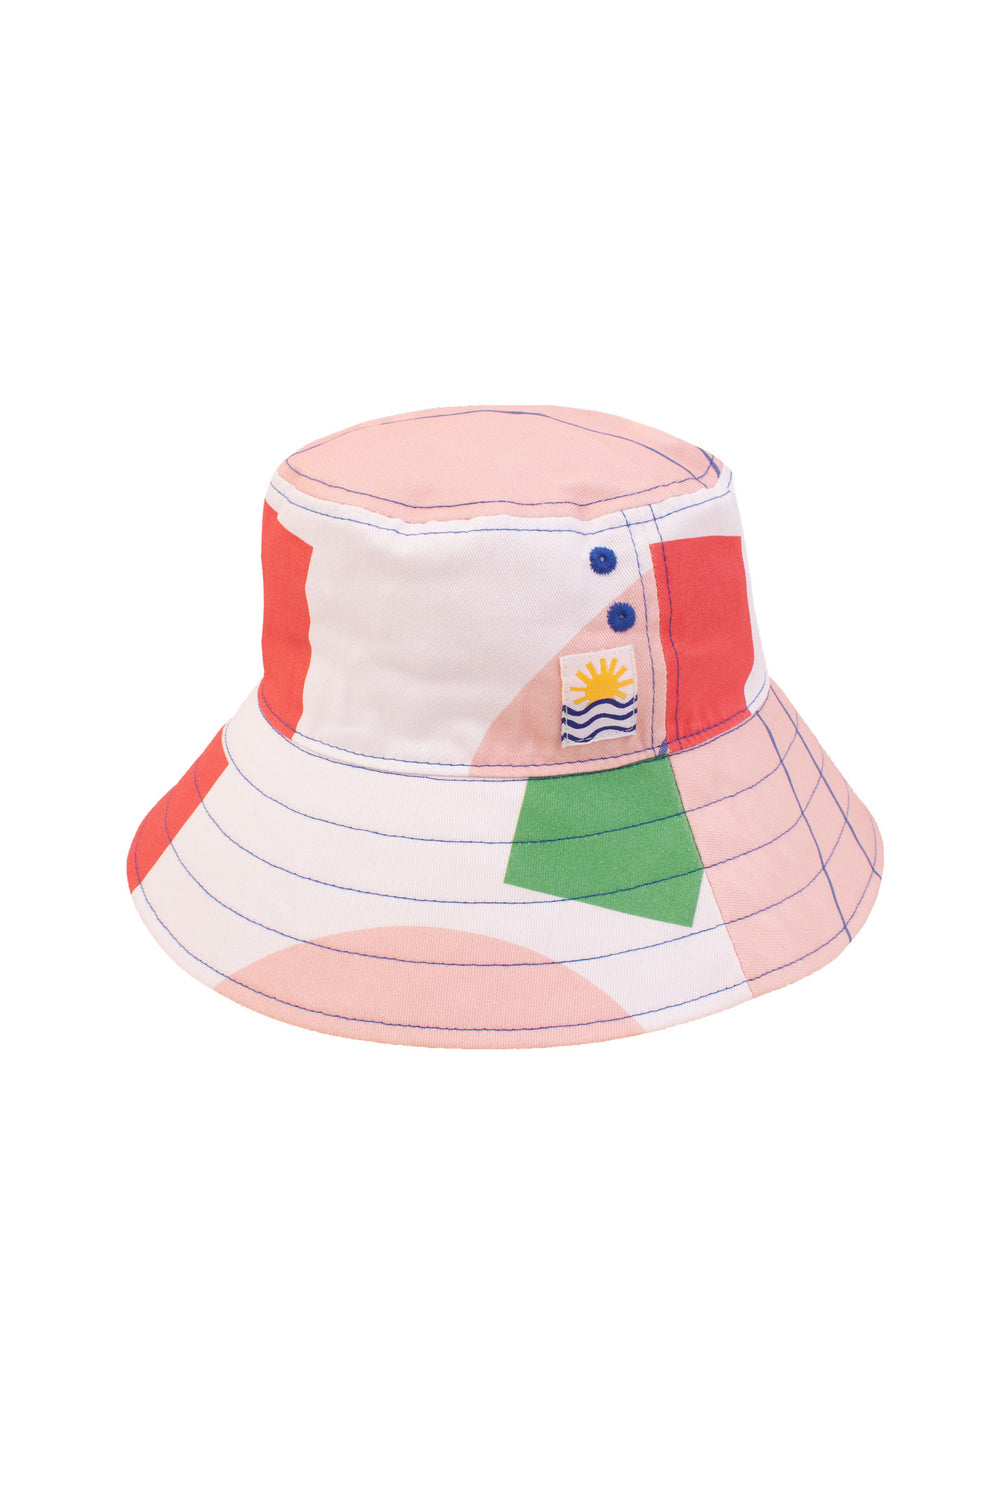 L.F Markey Mega Print Bucket Hat